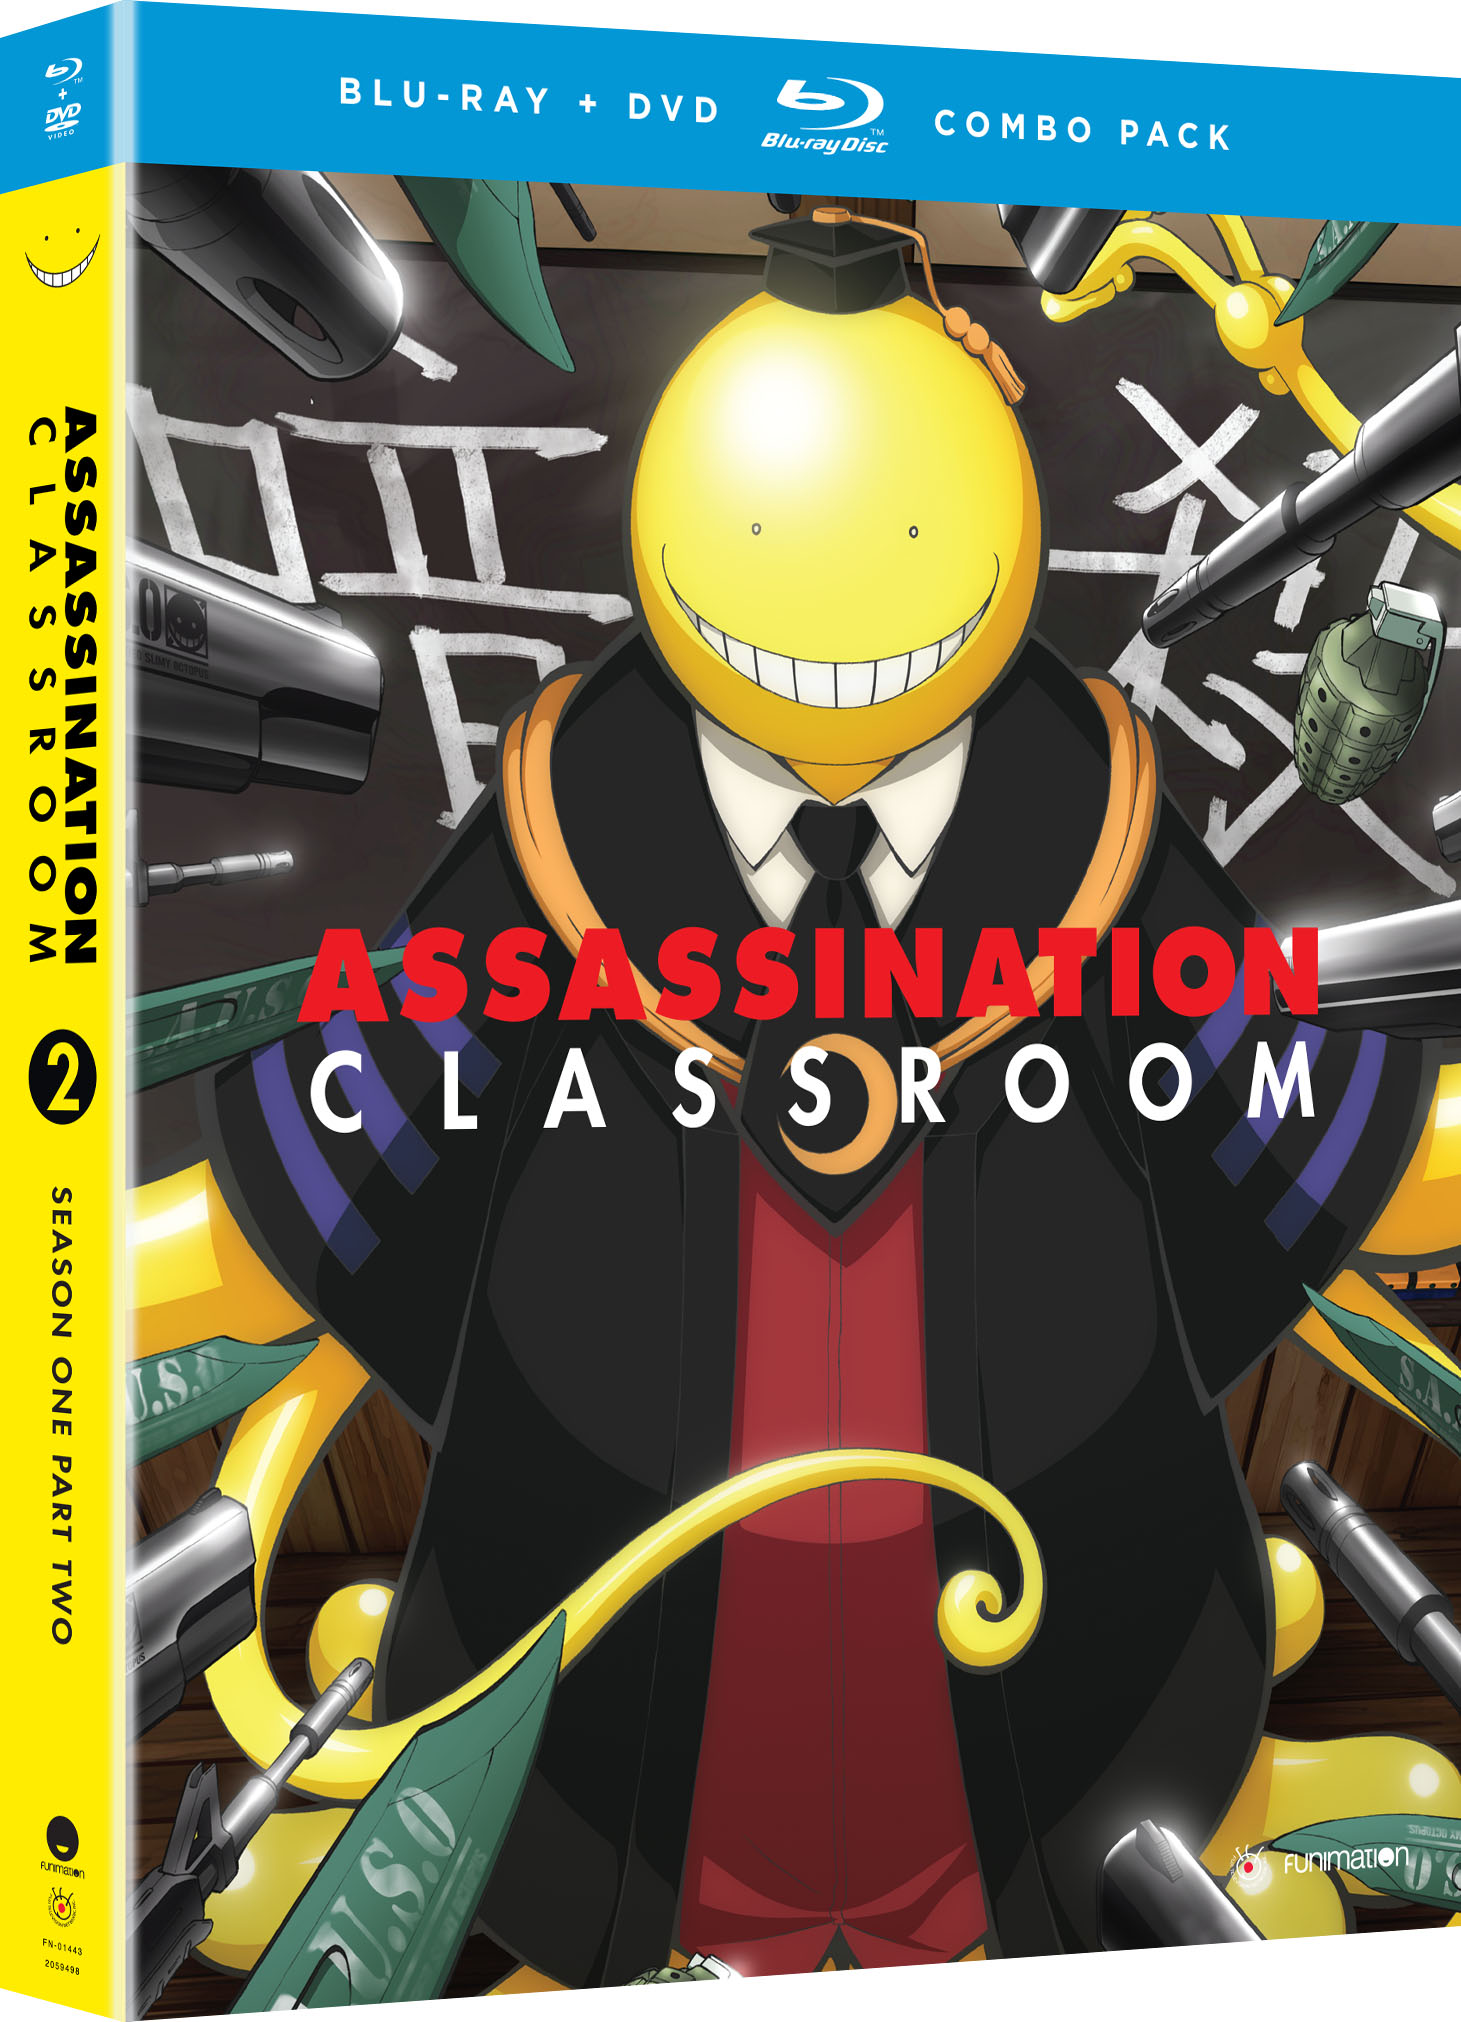 Assassination Classroom em português brasileiro - Crunchyroll